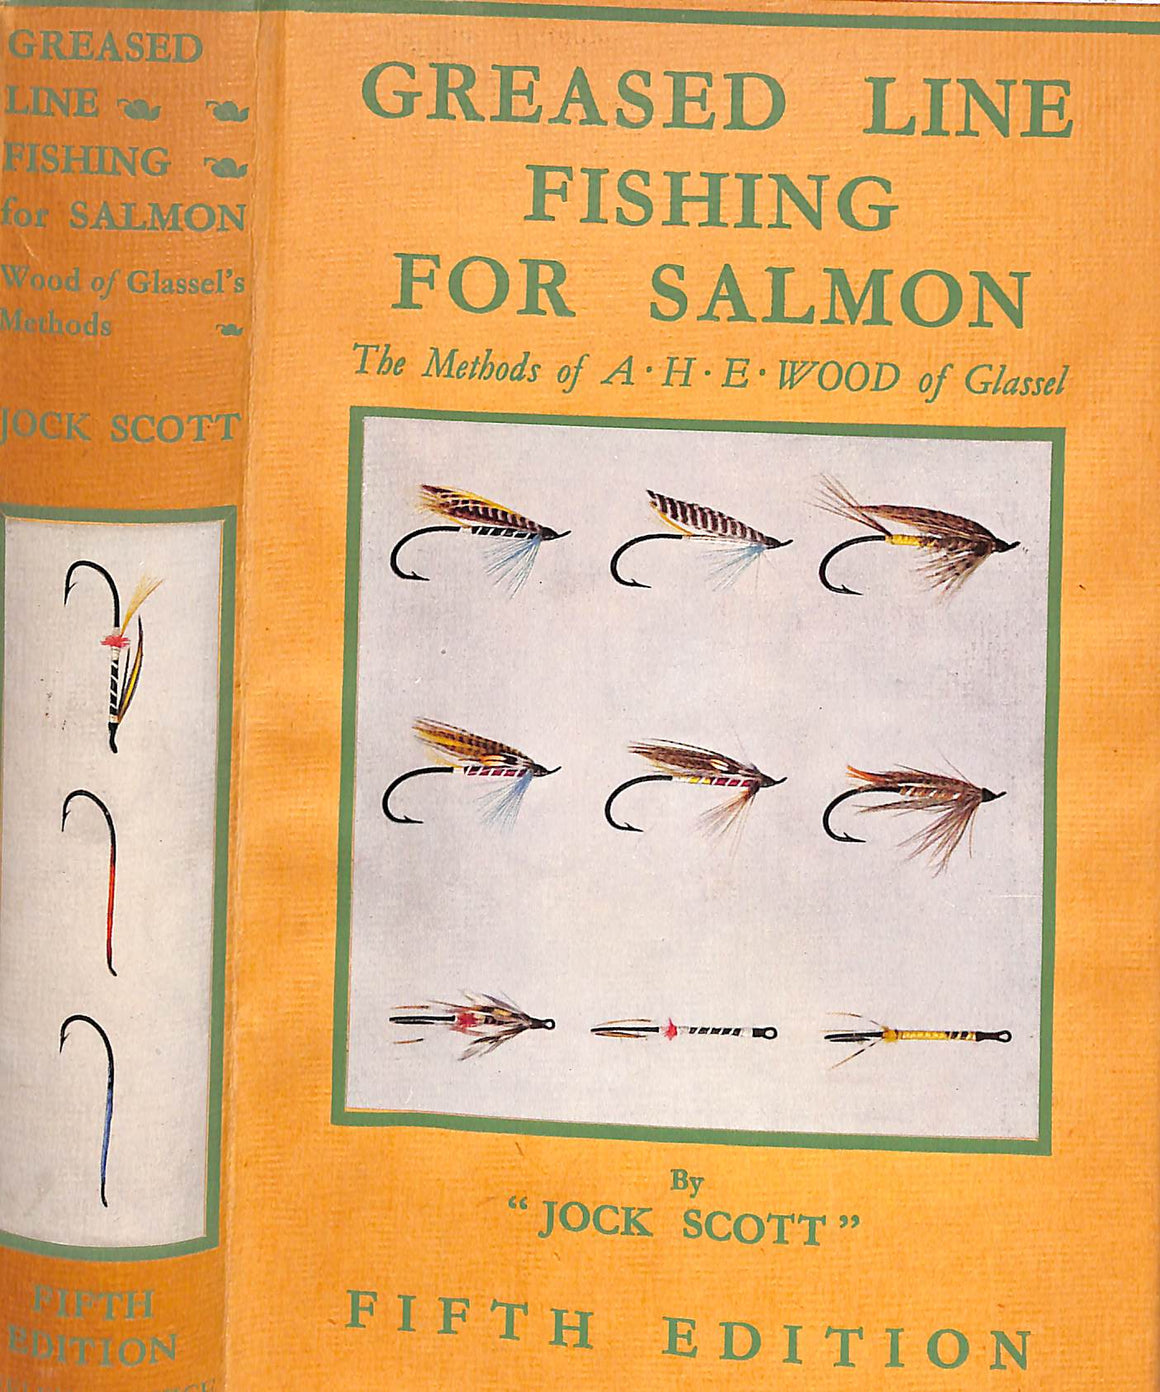 "Greased Line Fishing For Salmon" 1950 "Jock Scott"